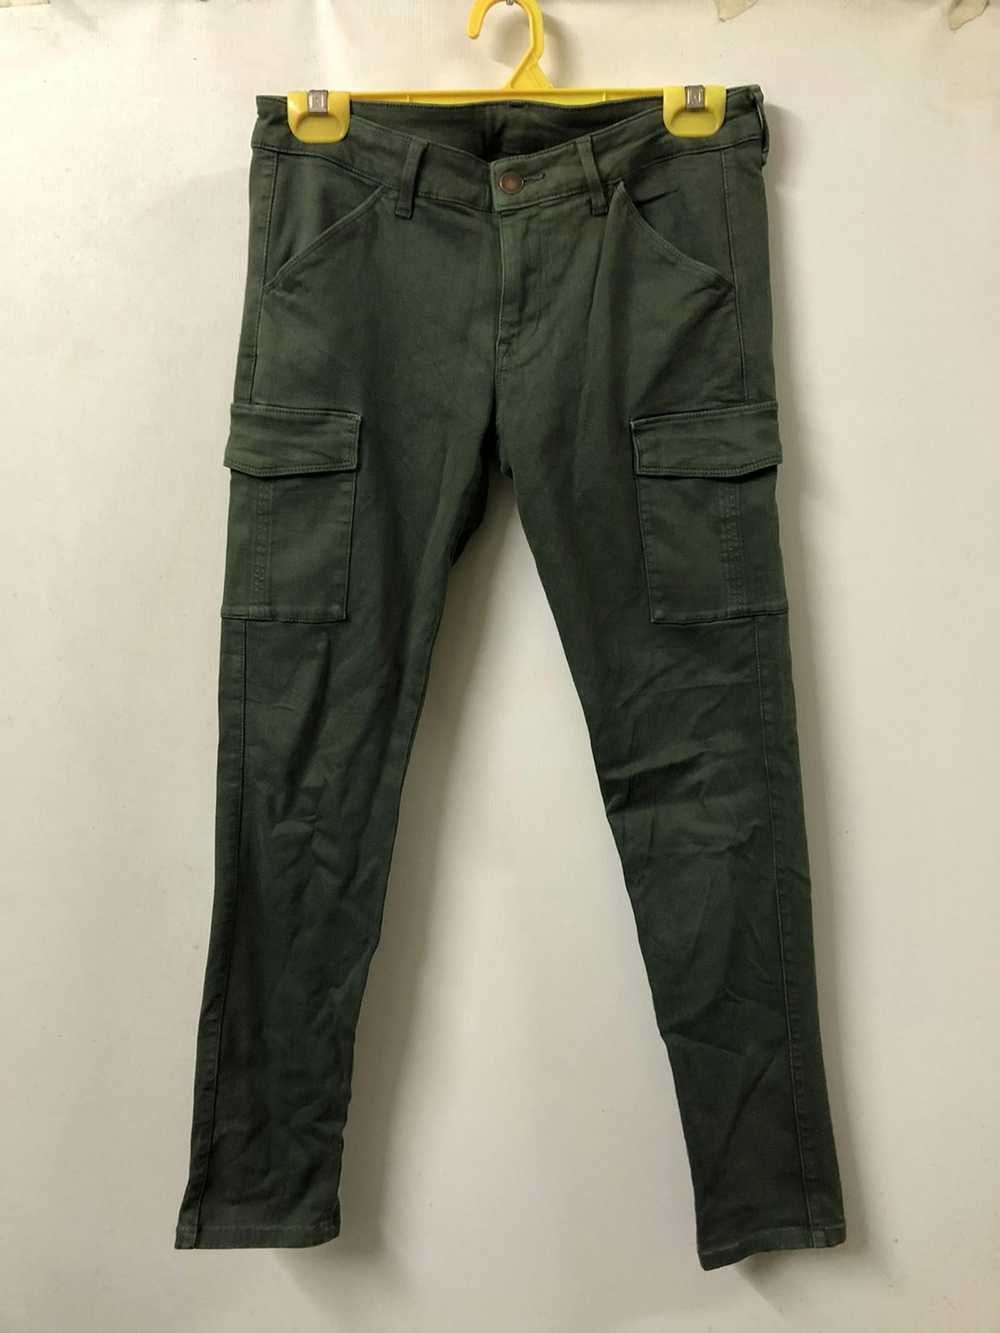 Military × Streetwear × Vintage Cargo Pants Skinn… - image 1